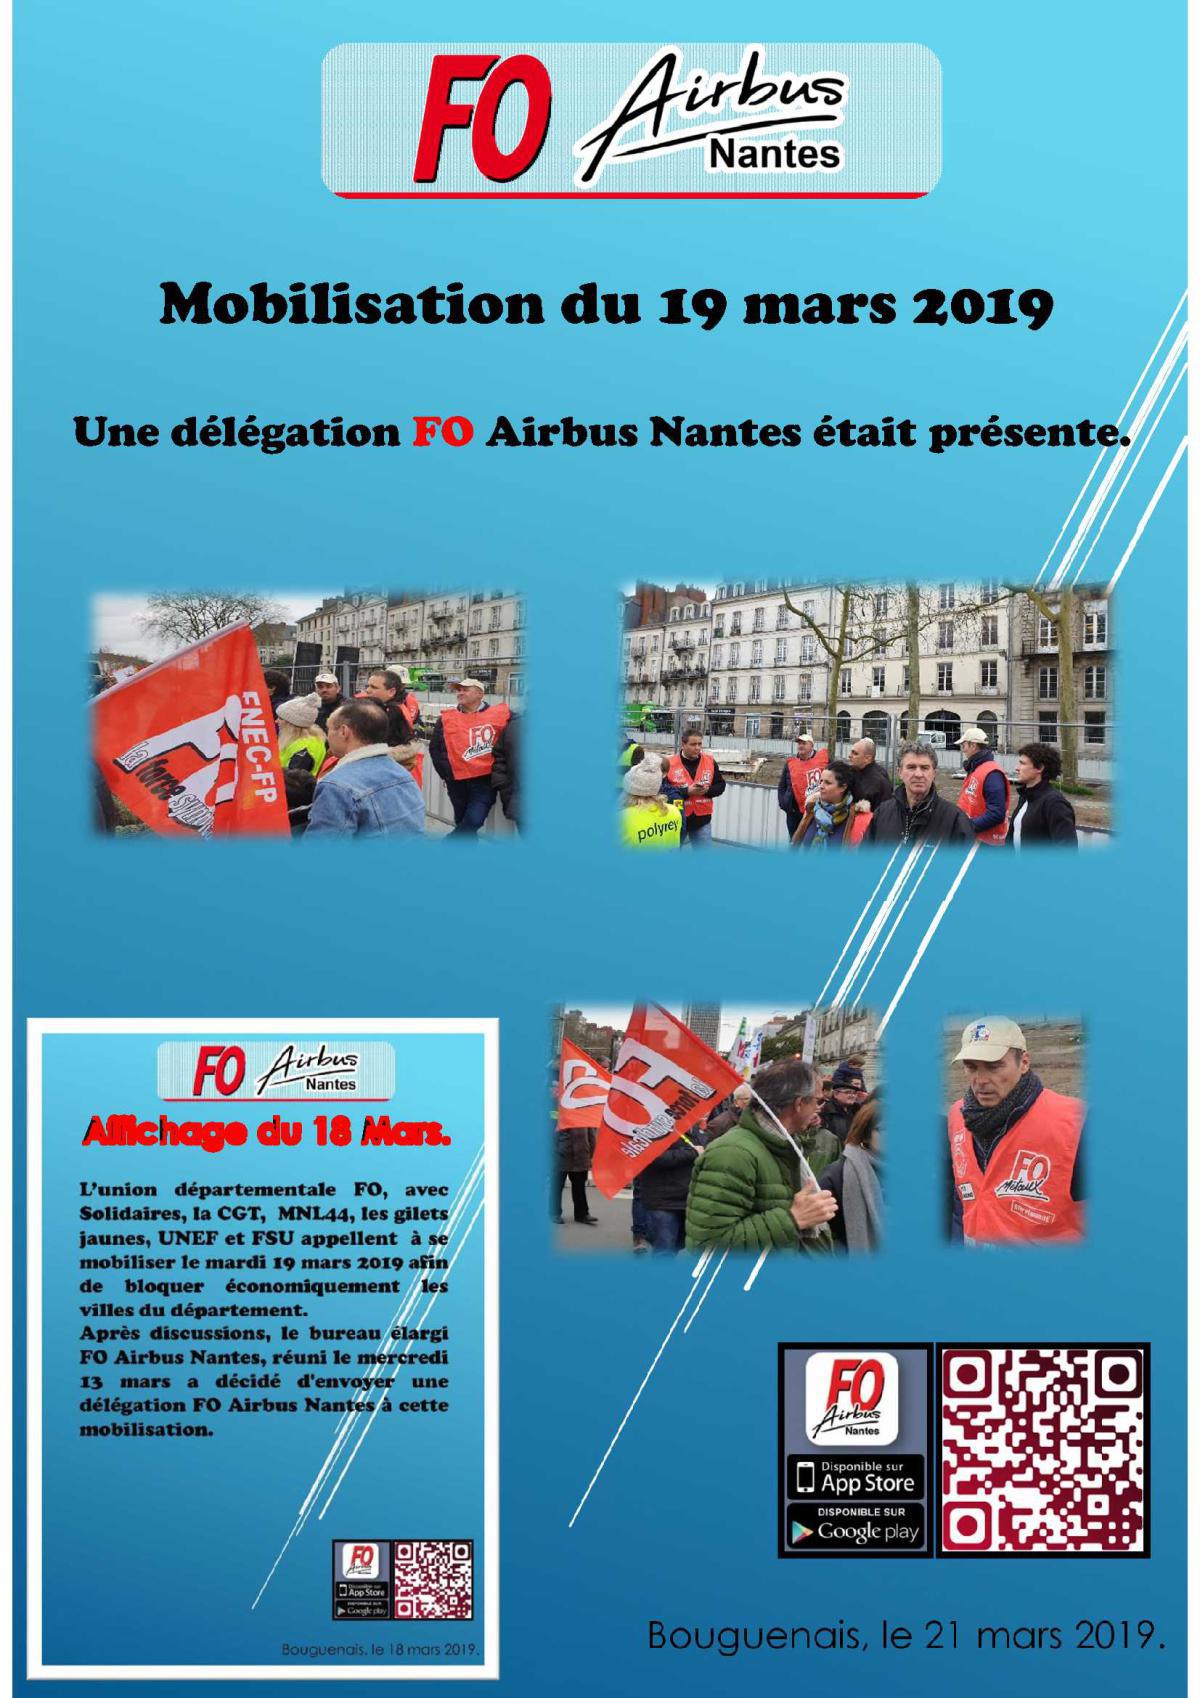 Mobilisation du 19 mars 2019.